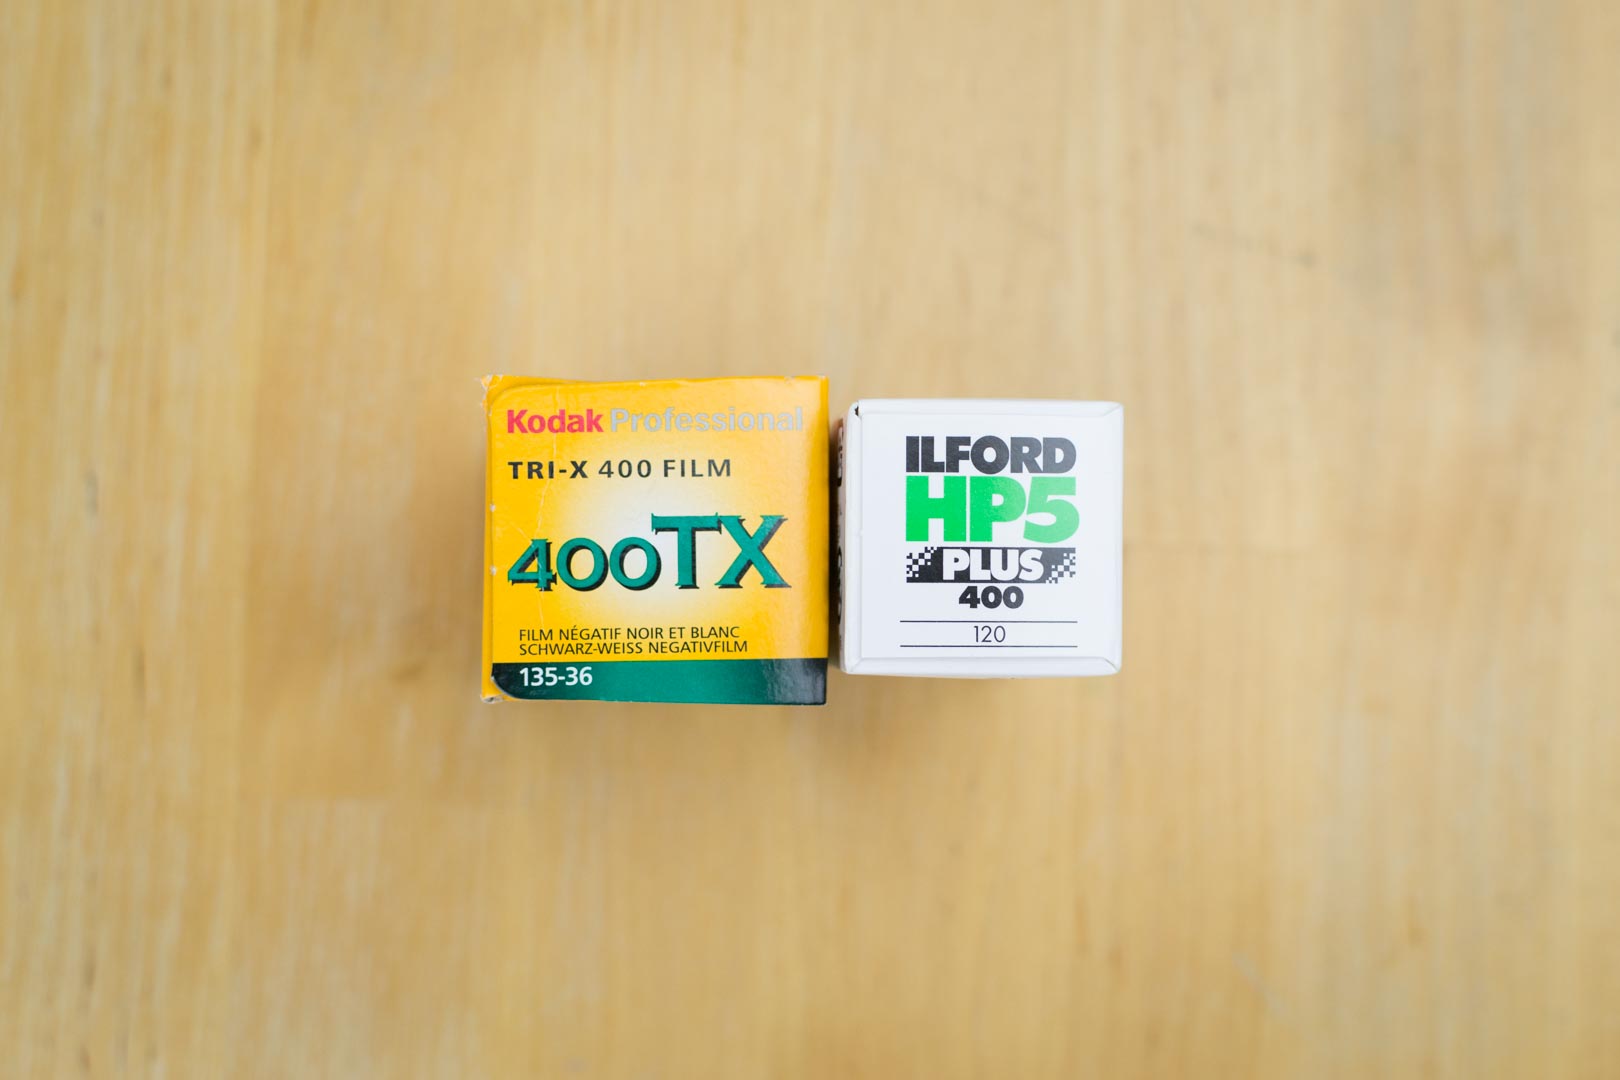 Les 2 pellicules que je vous conseille : la TriX 400 (Kodak) et la HP5 Plus (Ilford)